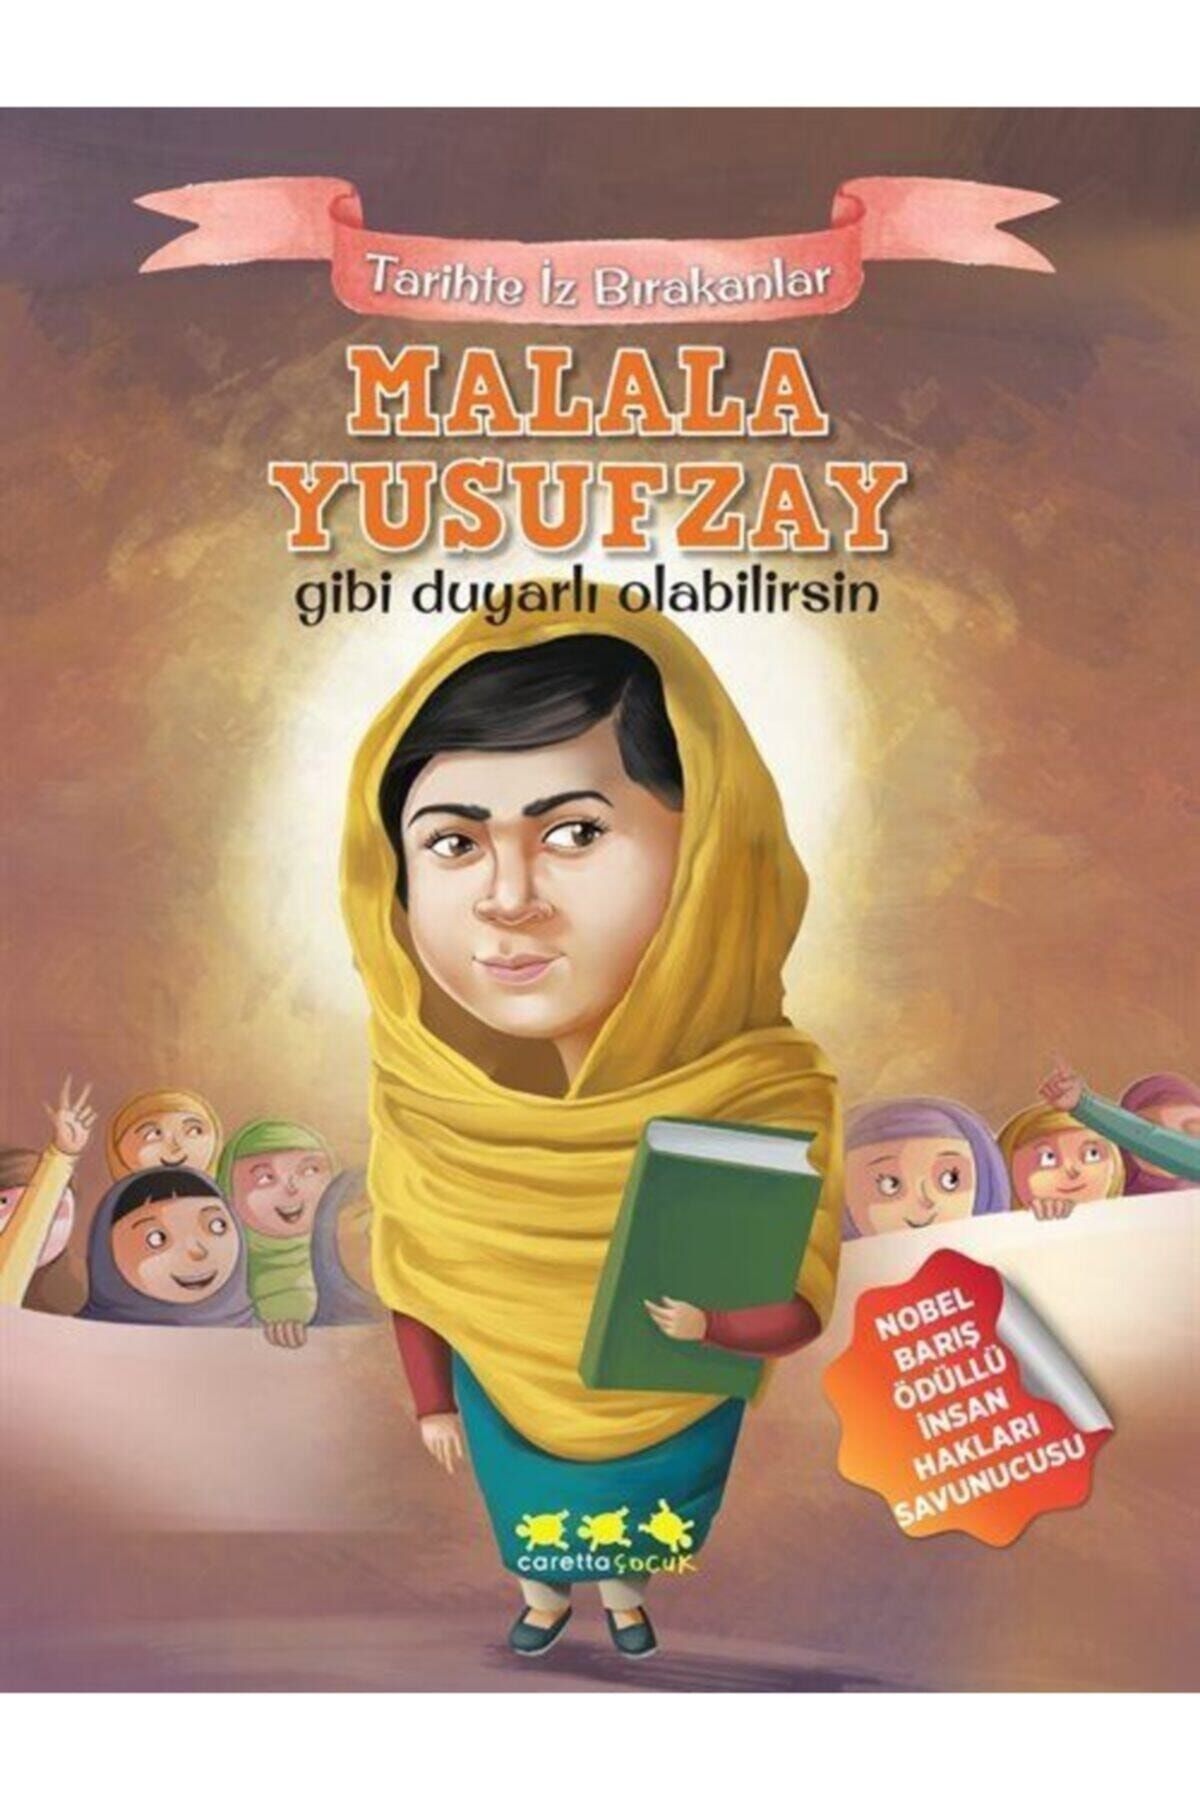 Caretta Çocuk Malala Yusufzay Gibi Duyarlı Olabilirsin - Tarihte Iz Bırakanlar